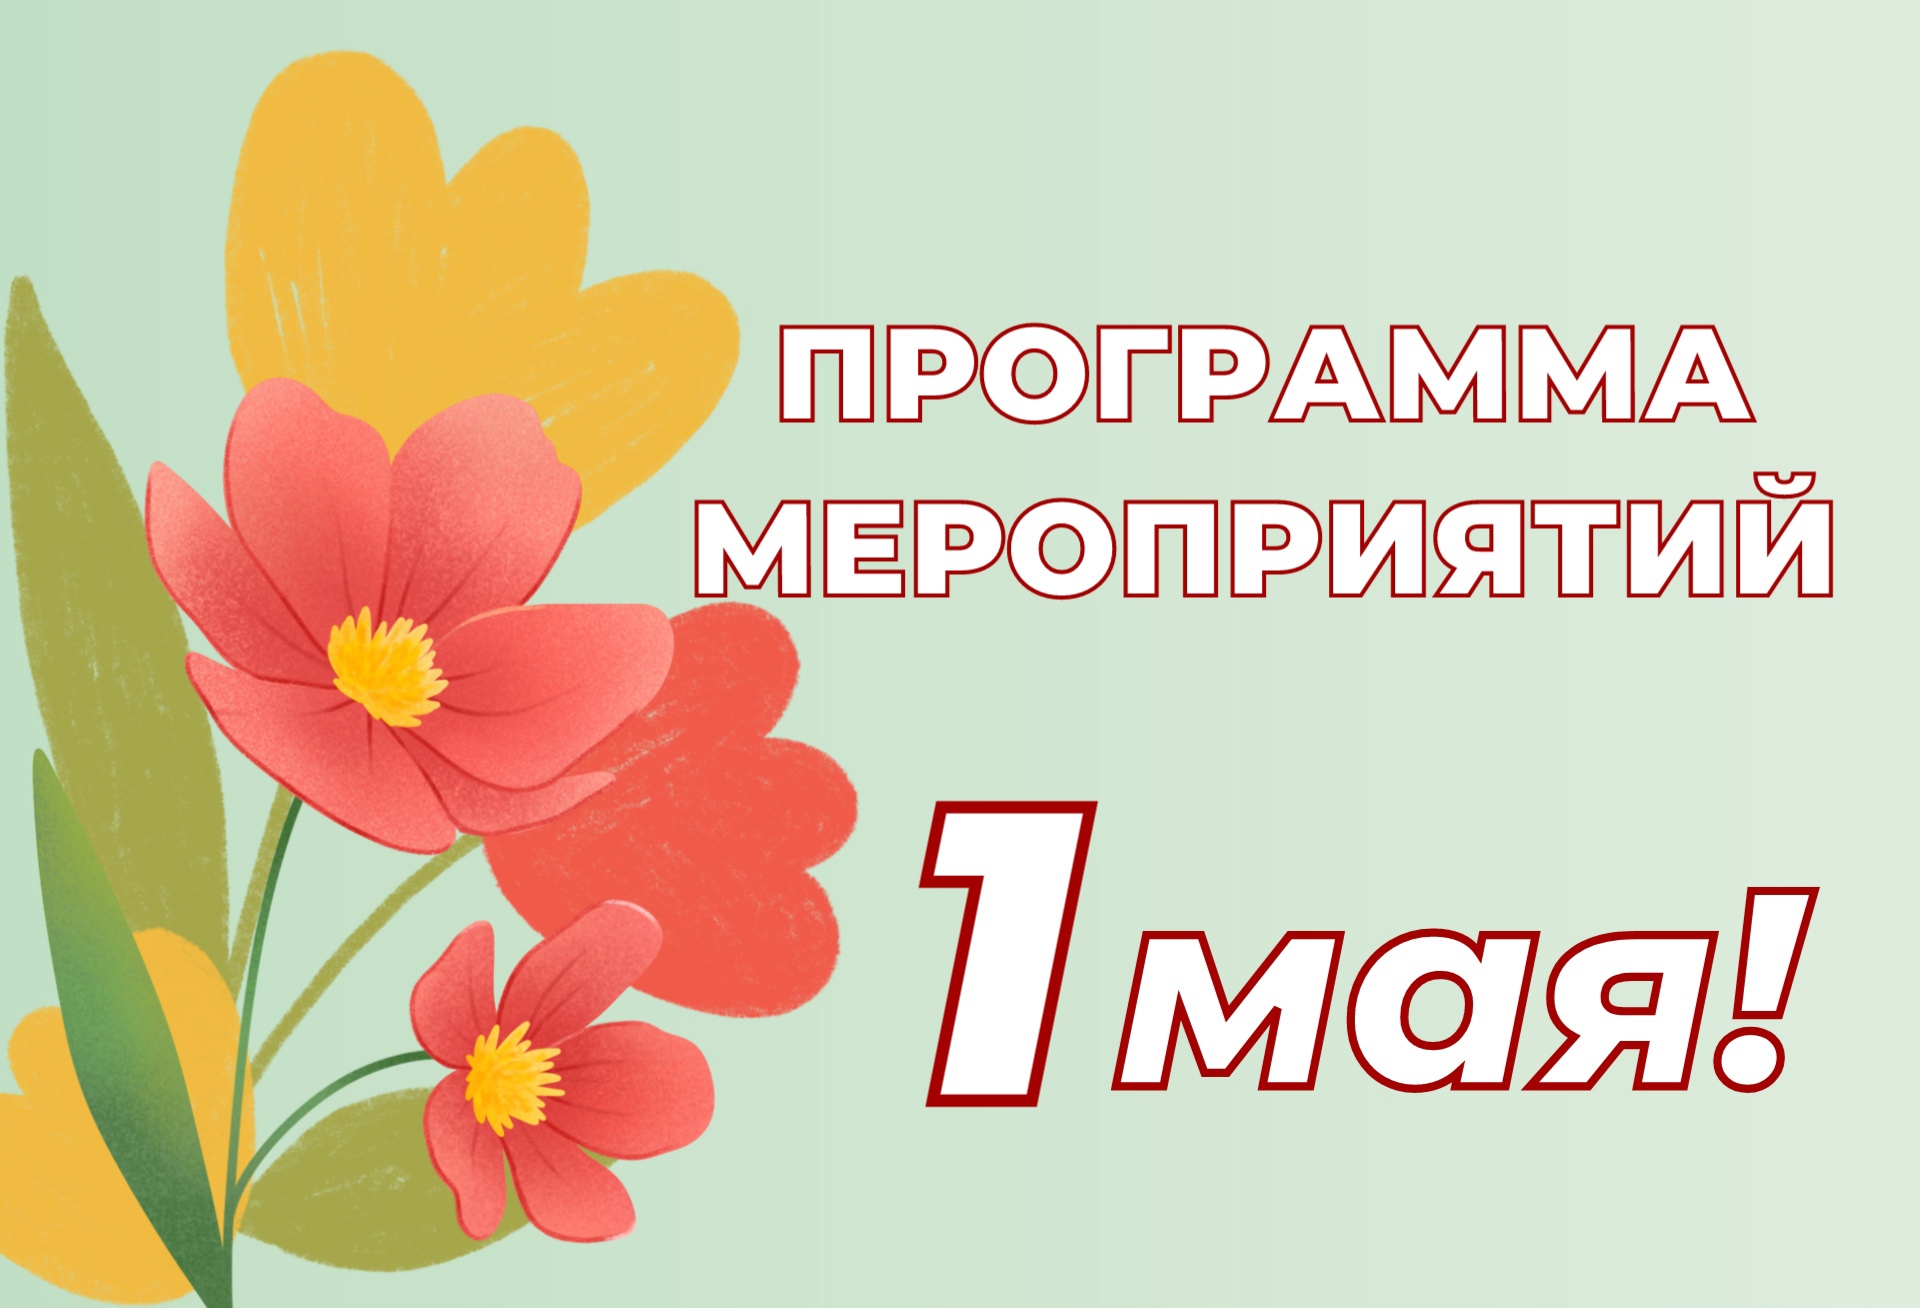 Бесплатные экскурсии, танцы и фейерверк: 1 мая новокузнечан ждёт много сюрпризов